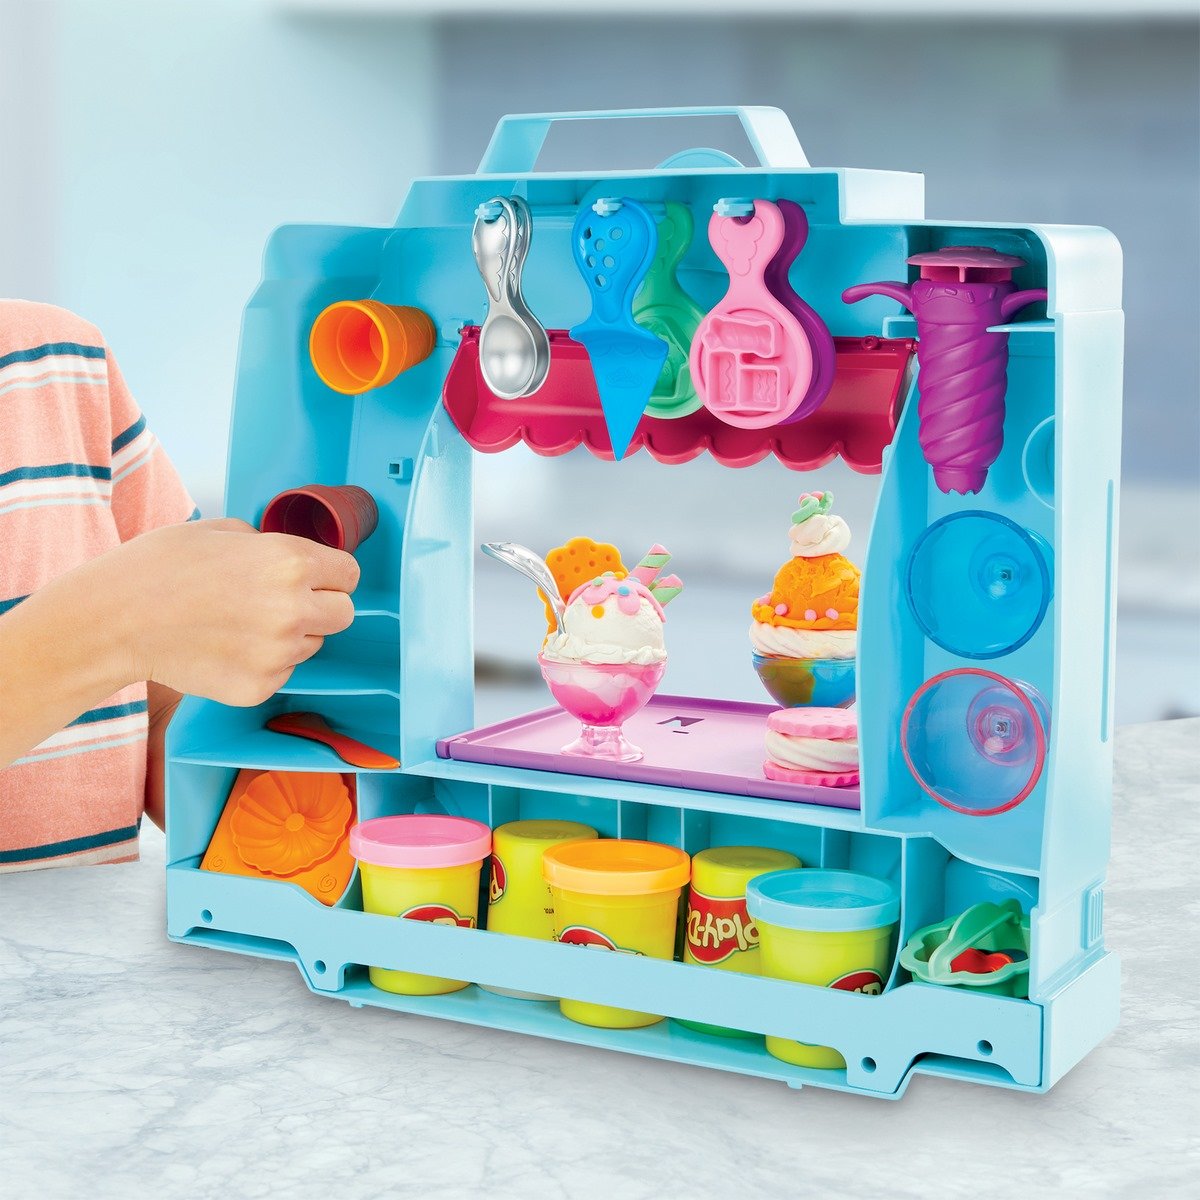 Play doh kitchen creations - camion de glace geant, activites creatives et  manuelles